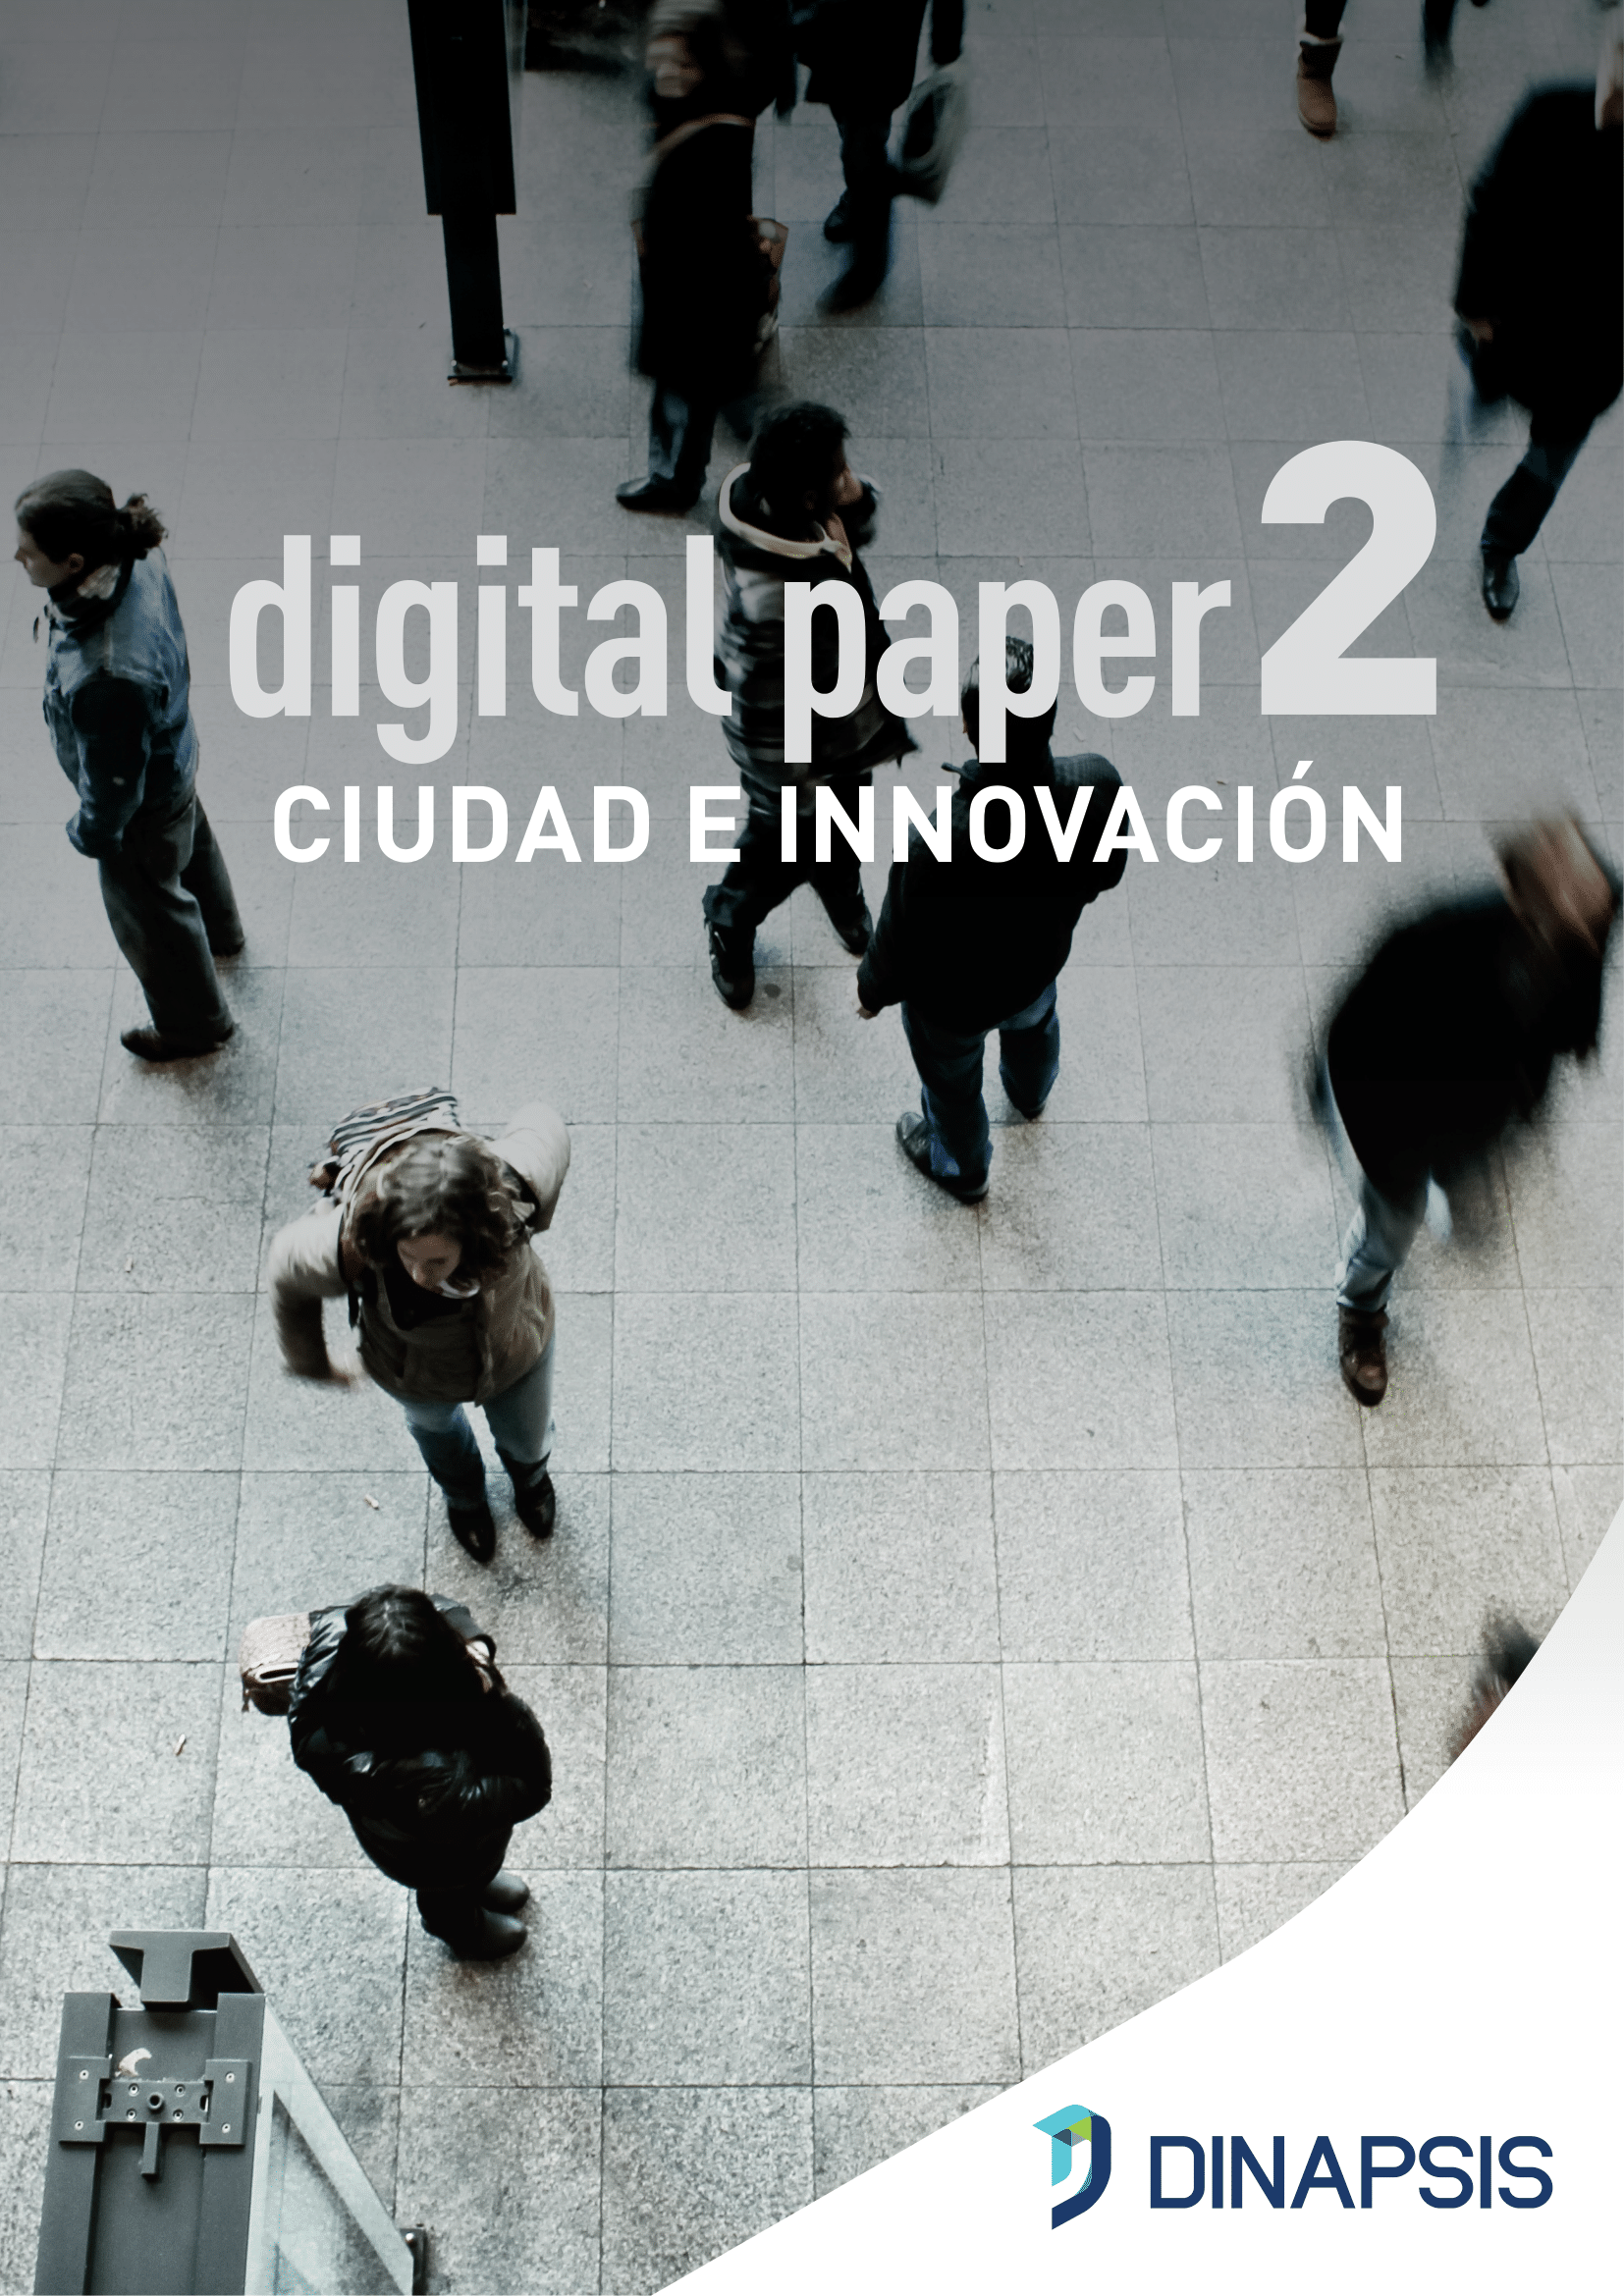 Digital Paper 2 - Ciudad e Innovación-1-01-1